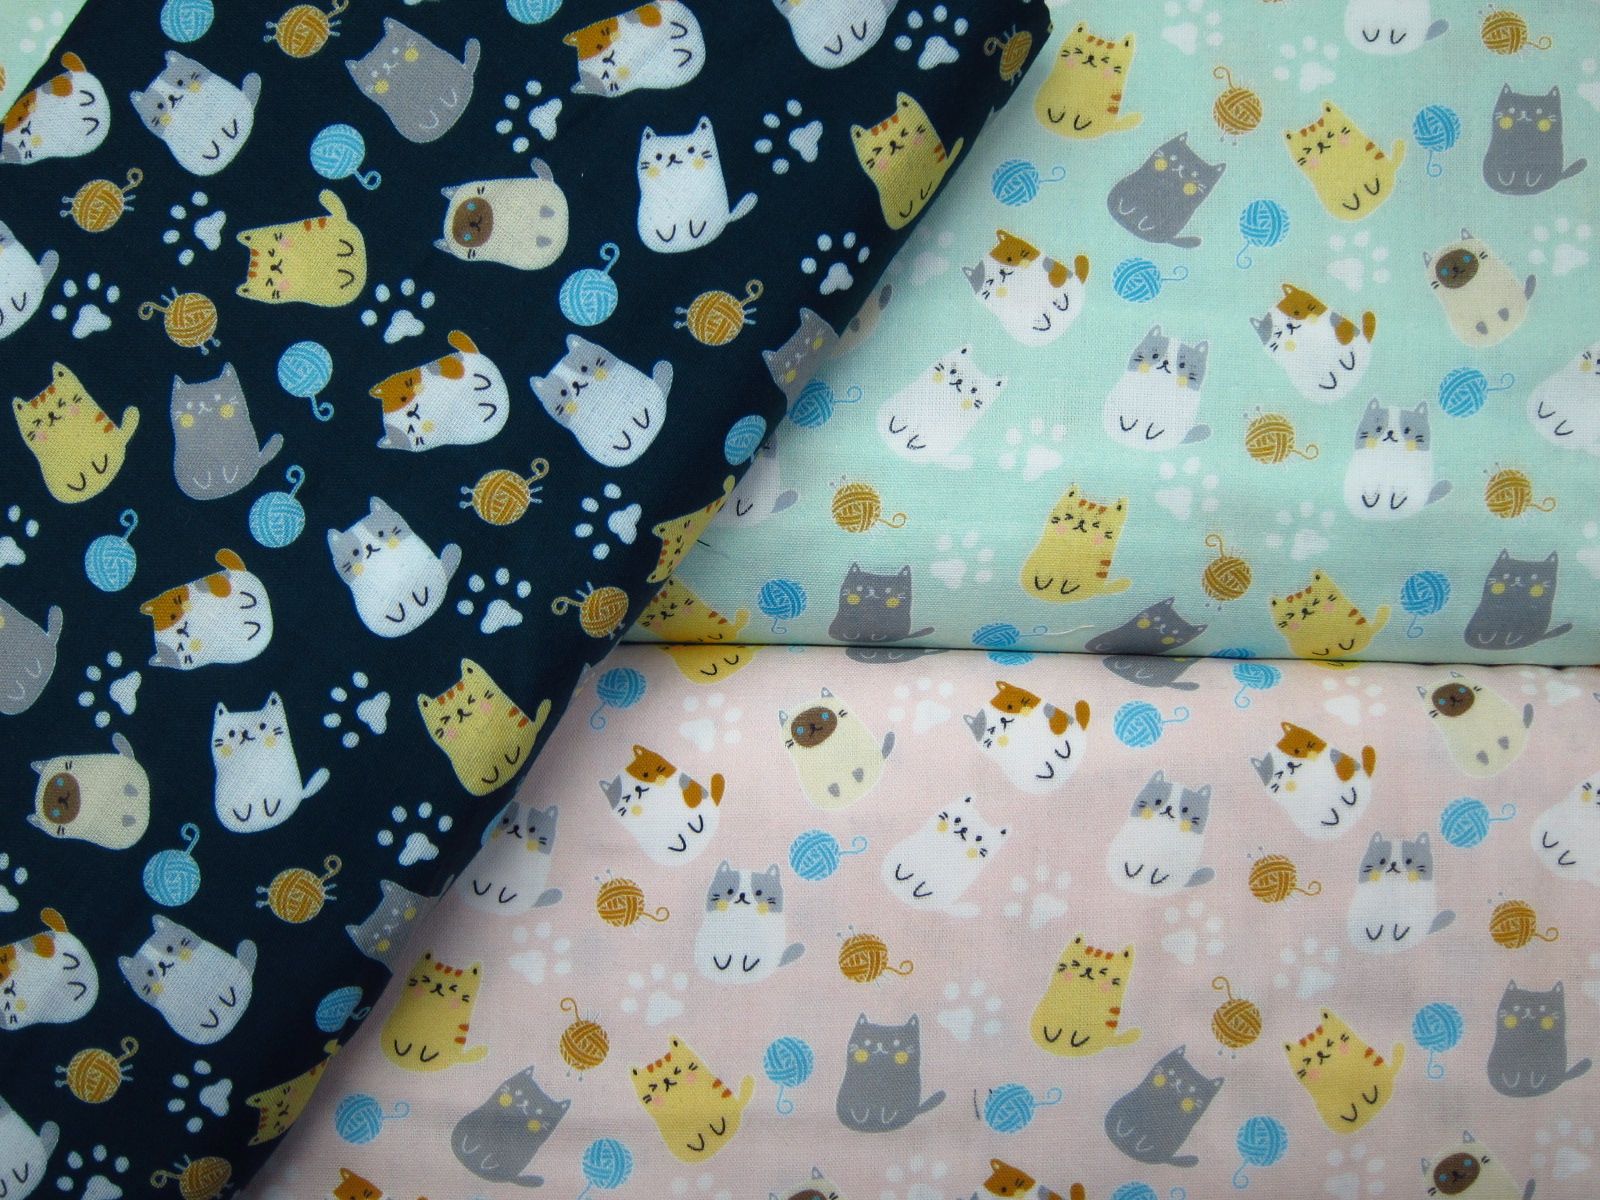 極度舒適二重紗-毛線貓-粉底、深藍底、水綠底-100%純綿、台灣製造